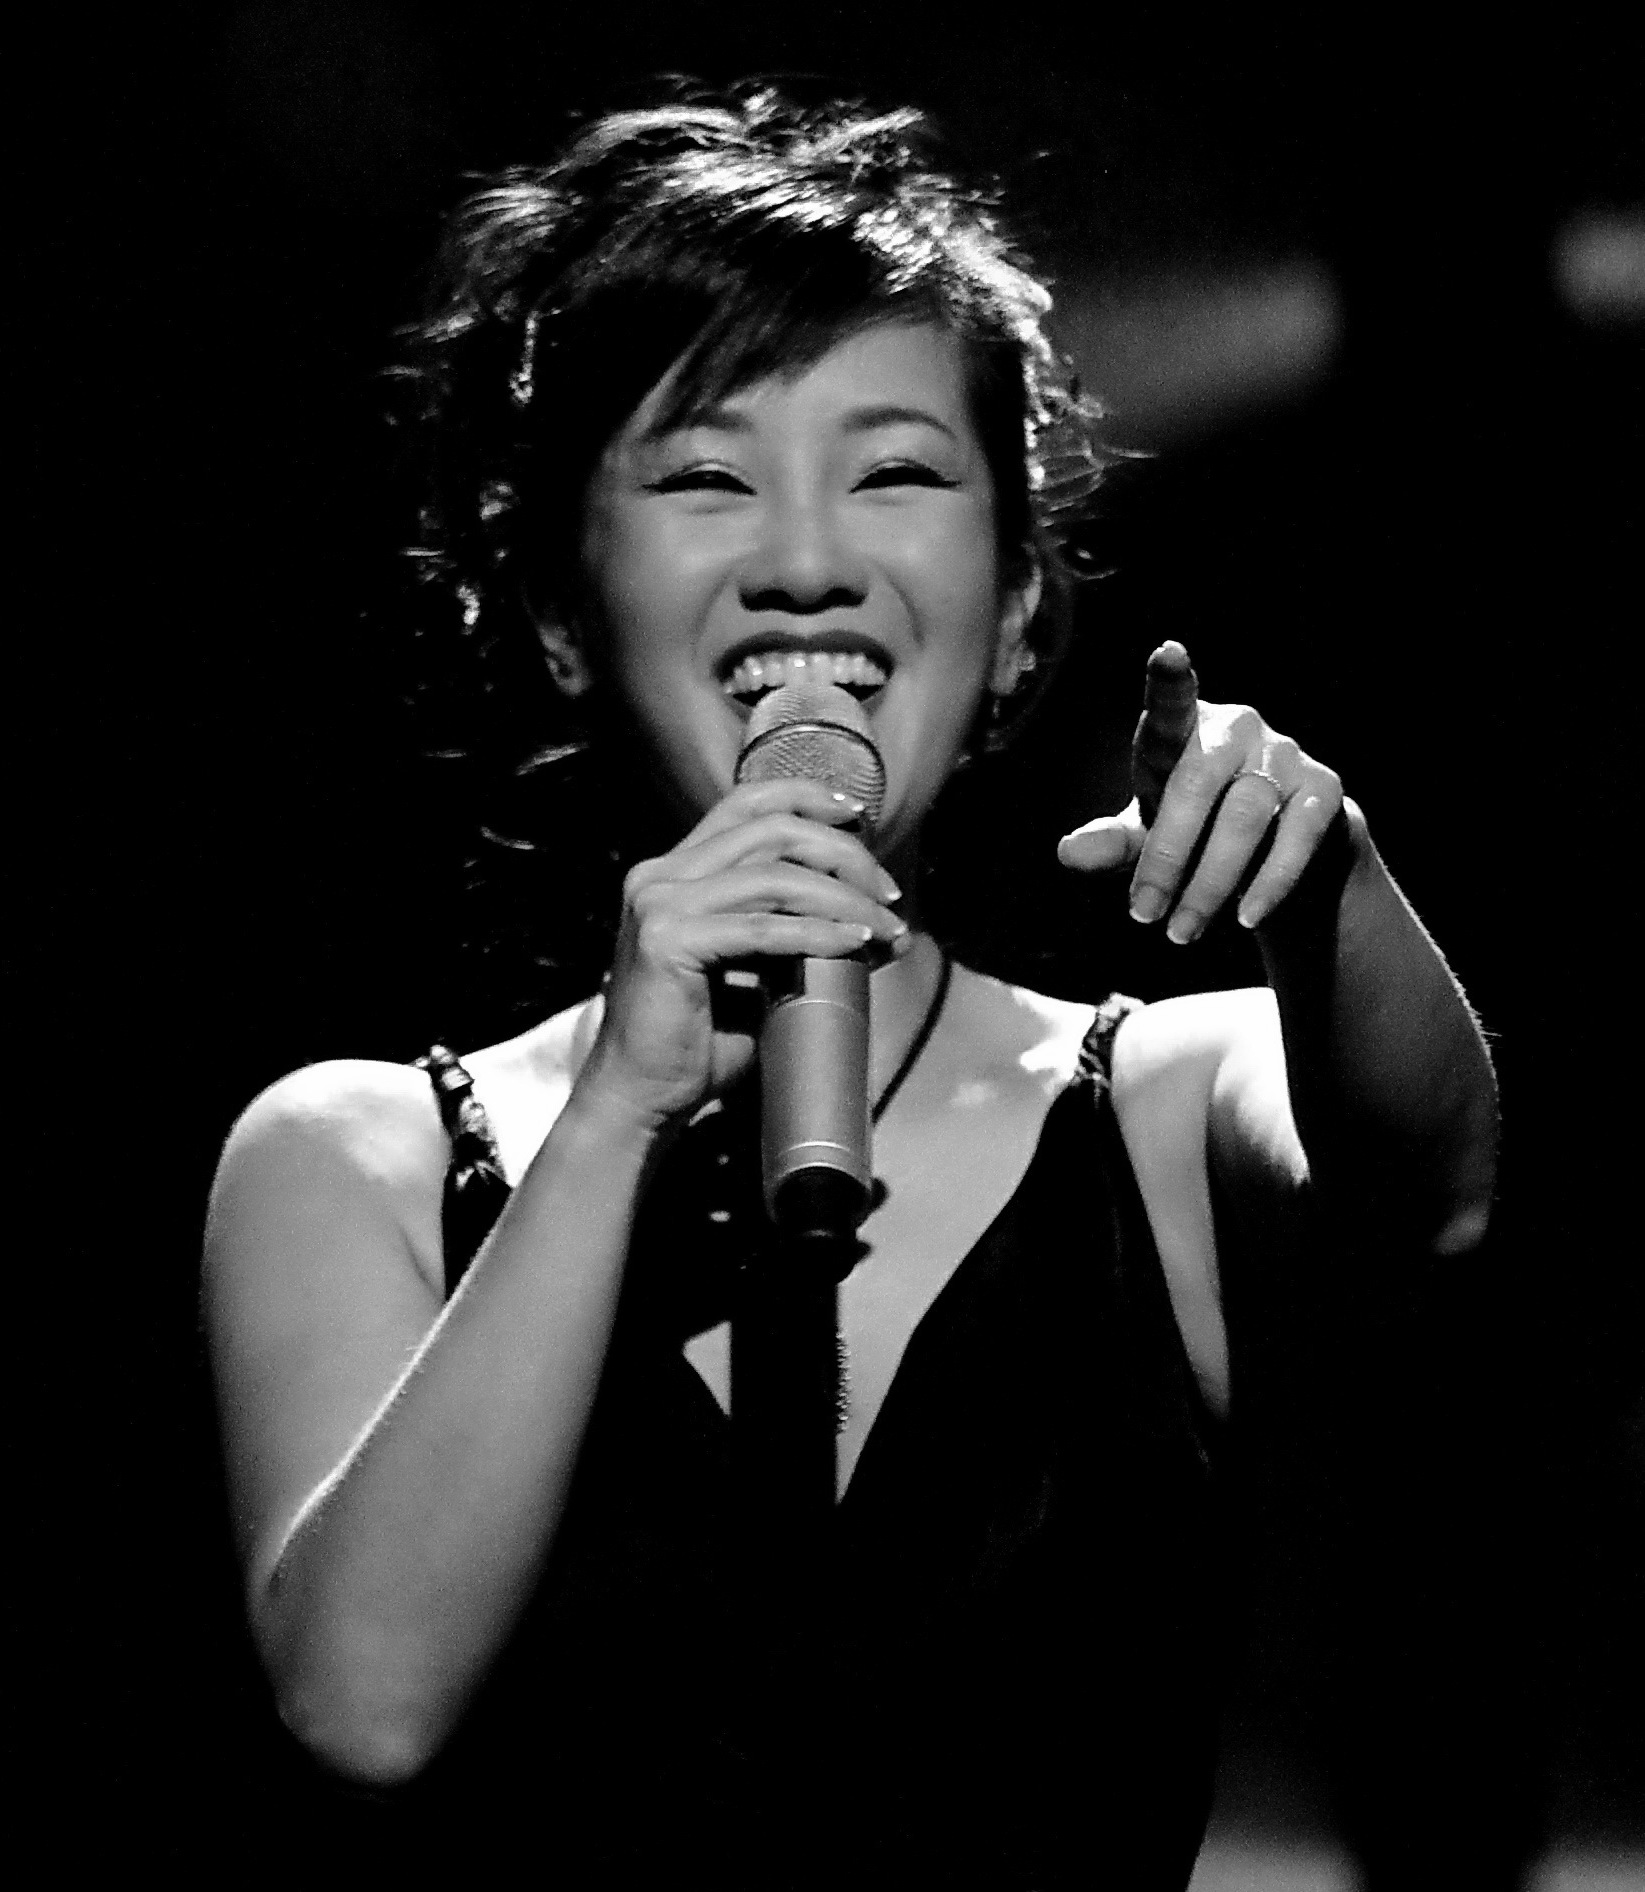 Hồng Nhung là một ca sĩ có tiếng tăm lớn trong làng nhạc Việt Nam. Hãy cùng nhìn vào hình ảnh của cô để chiêm ngưỡng vẻ đẹp và tài năng của một trong những giọng ca hàng đầu của Việt Nam.